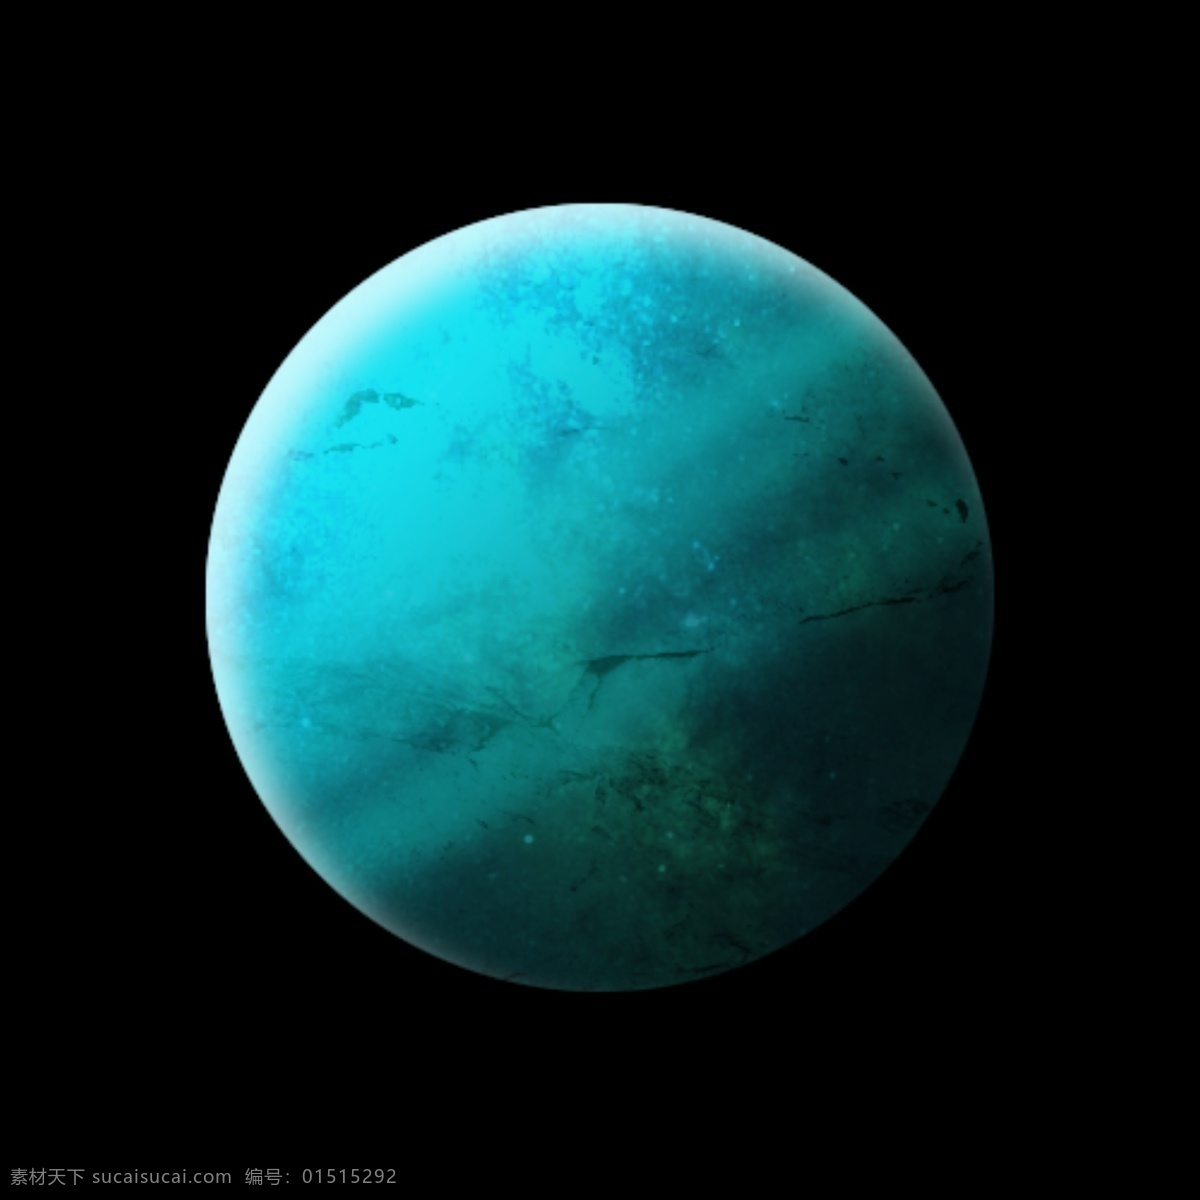 蓝色星球 水星 蓝星 星球 月亮 卫星 行星 自然景观 自然风光